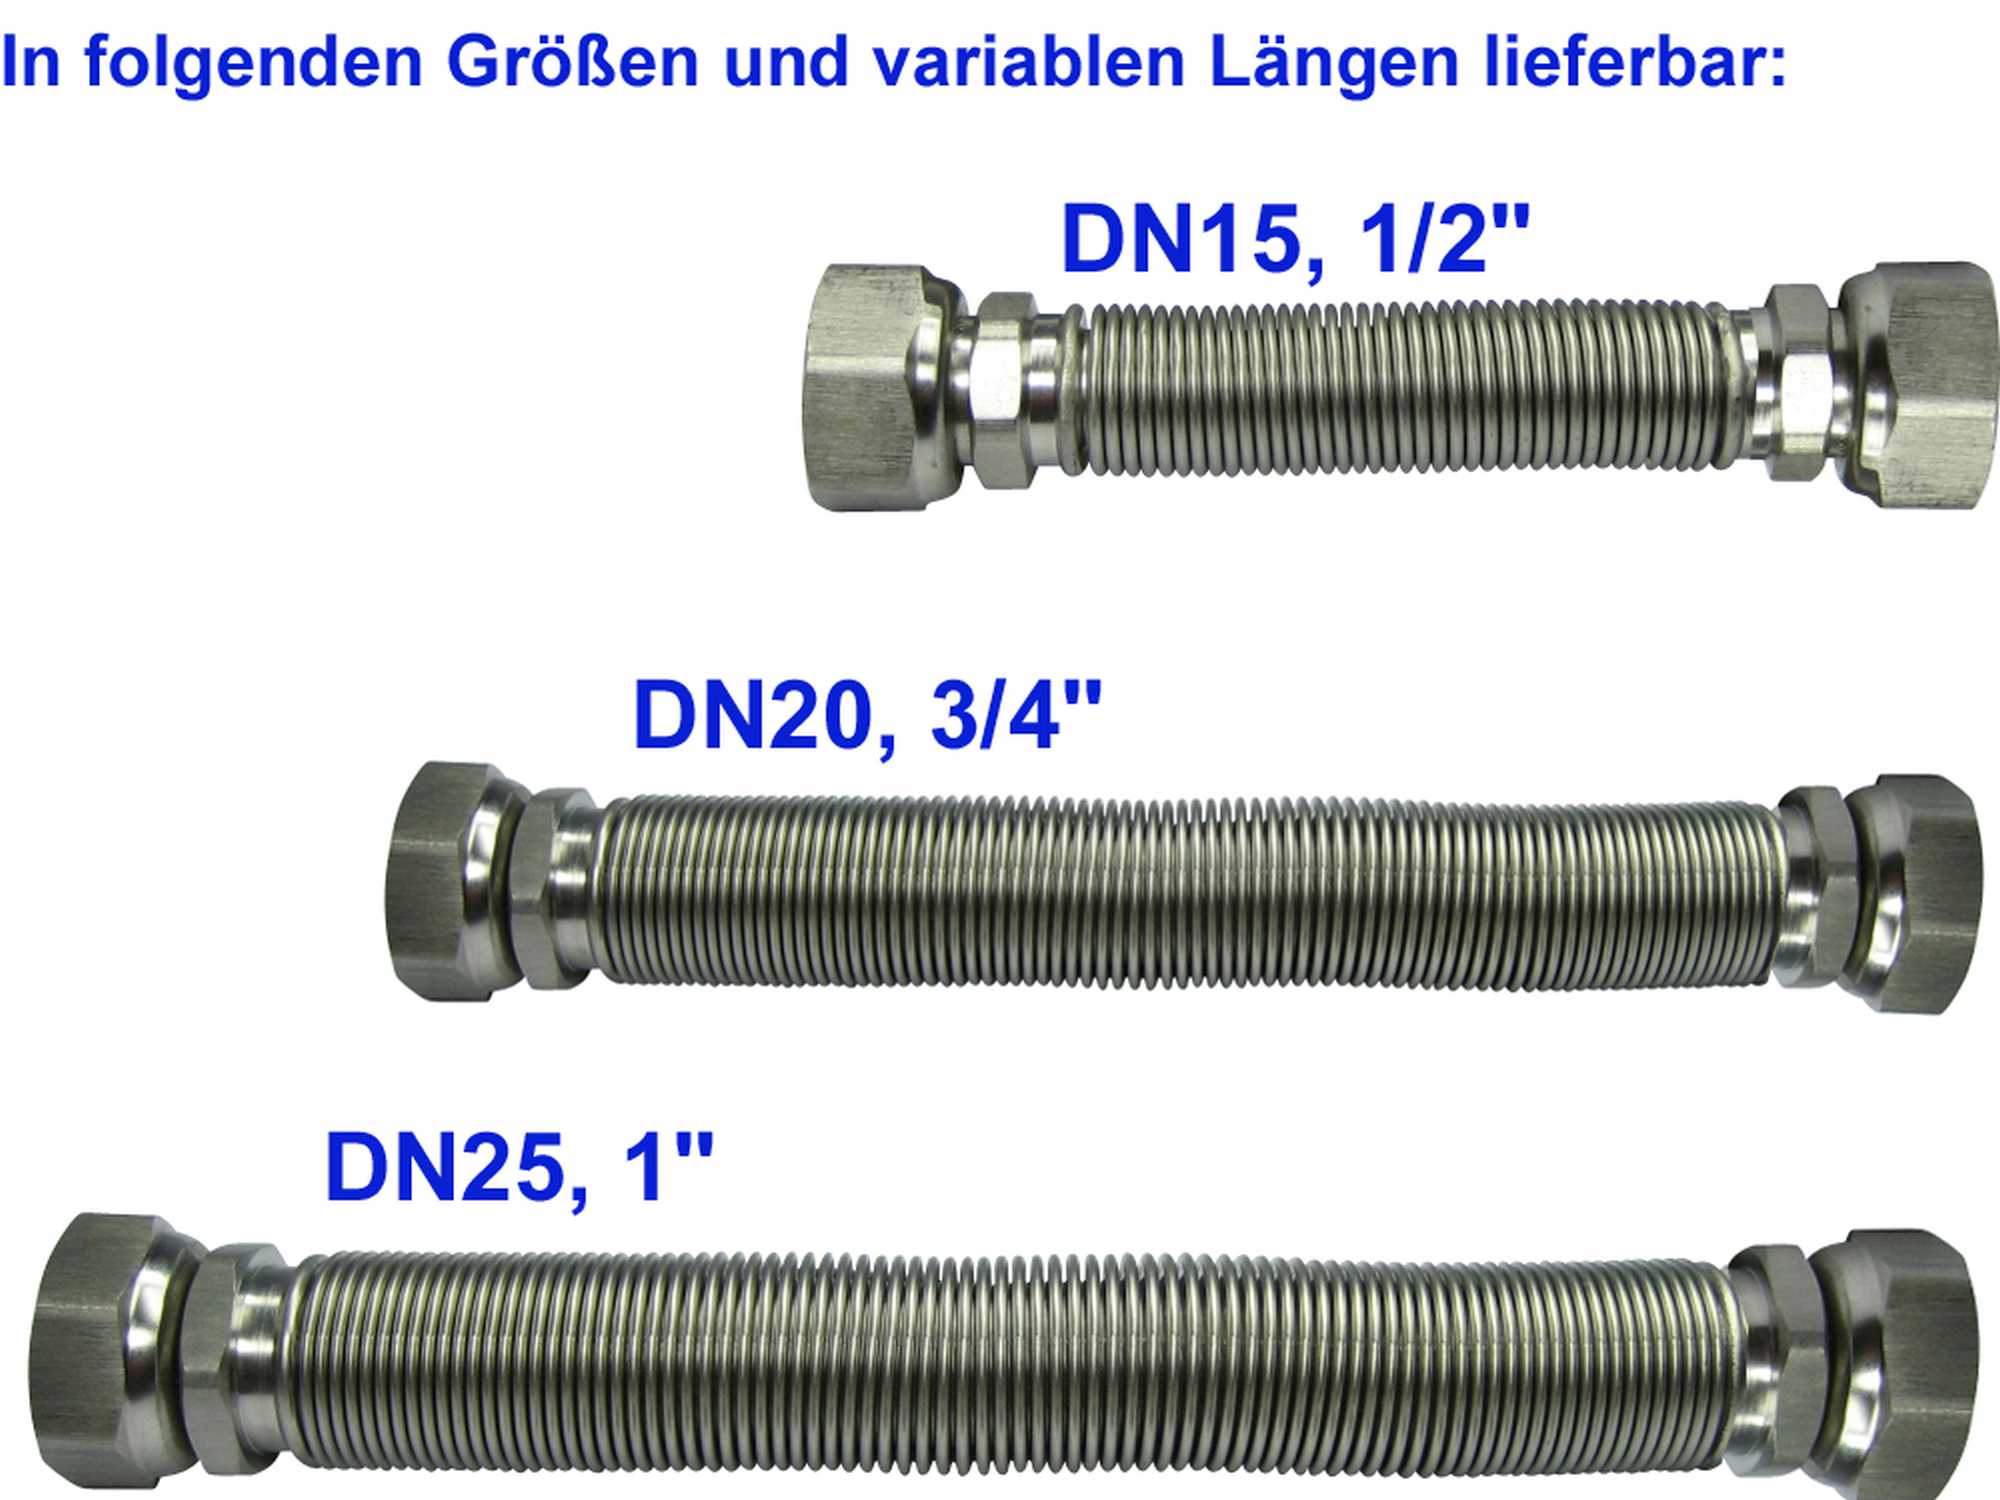 Edelstahlwellrohr ausziehbar, DN20 beidseitig 3/4" ÜM, Highflex Edelstahlschlauch 1.4404, formstabil, variable Längen von 75-130mm bis 500-1.000mm